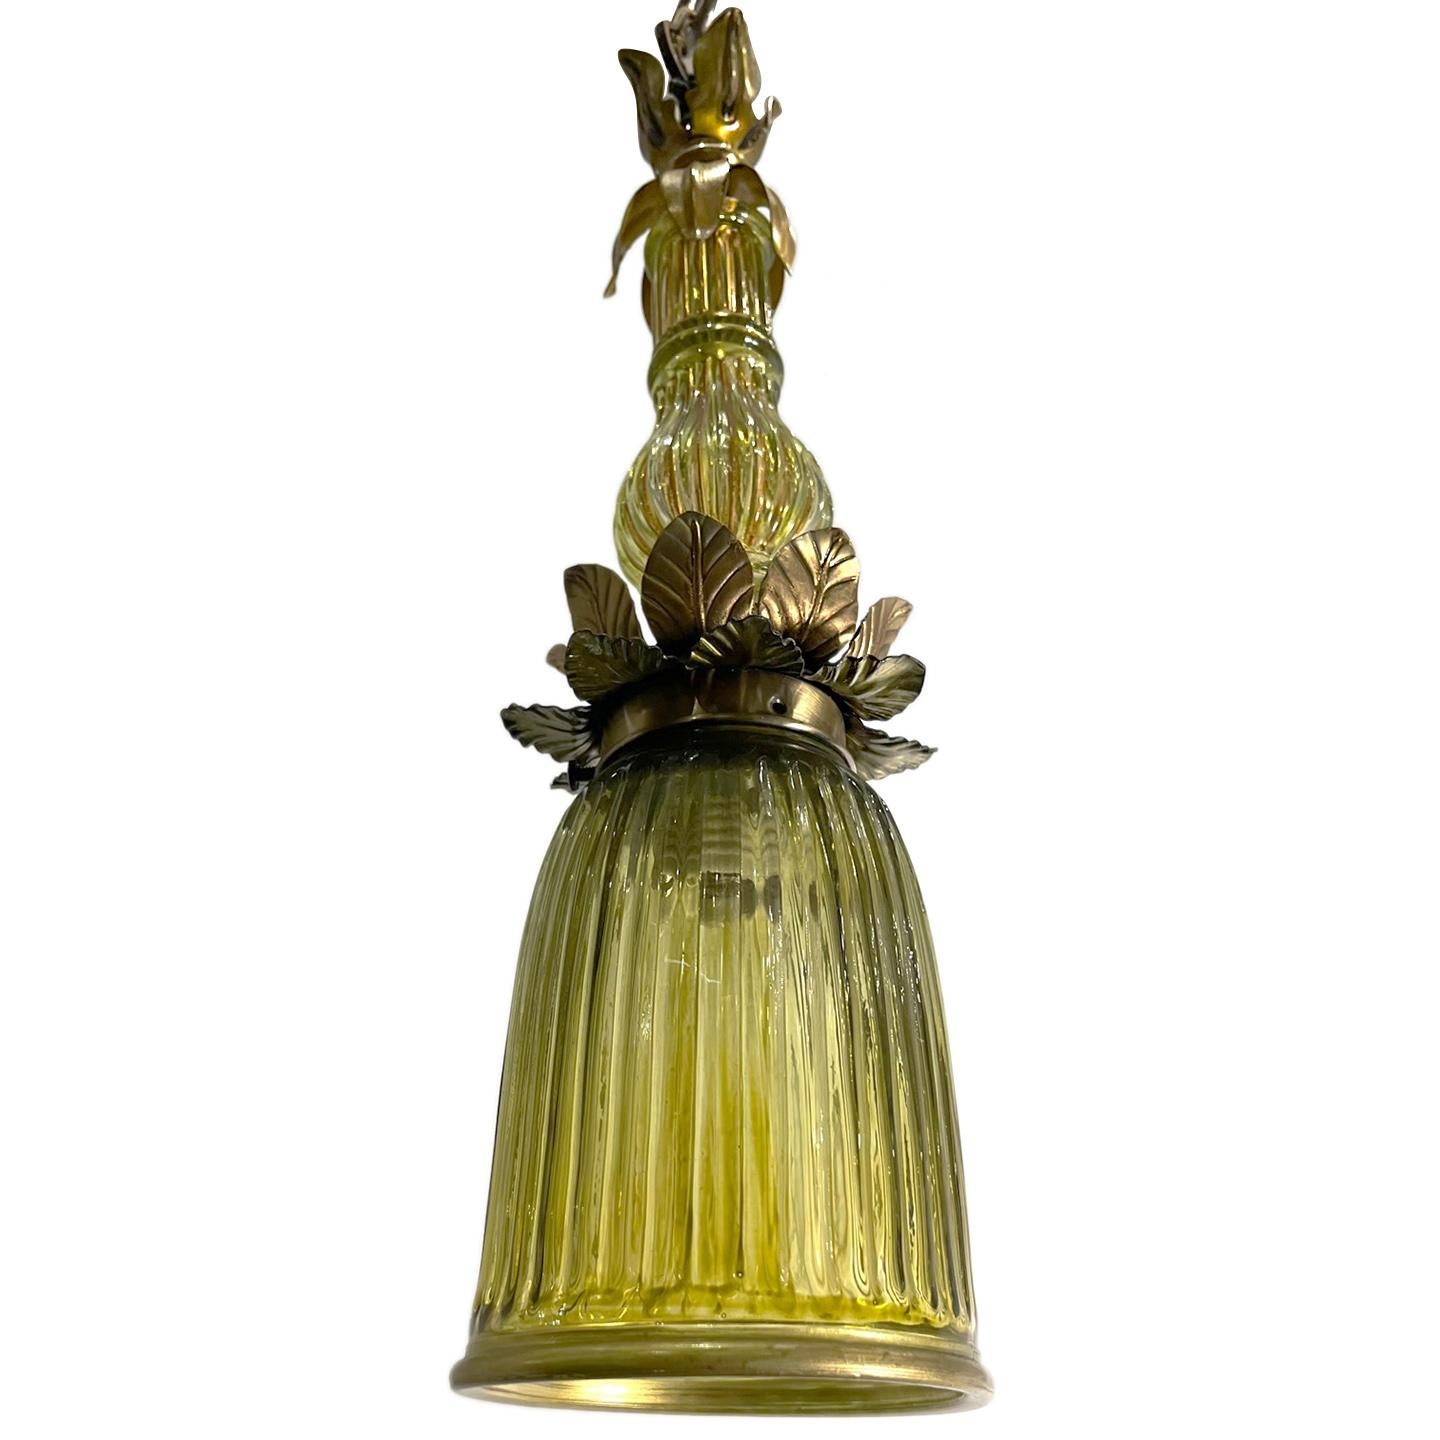 Paire de luminaires italiens des années 1950 en métal doré et vert olive. Lumière unique. Vendu à l'unité.

Mesures :
Chute:17